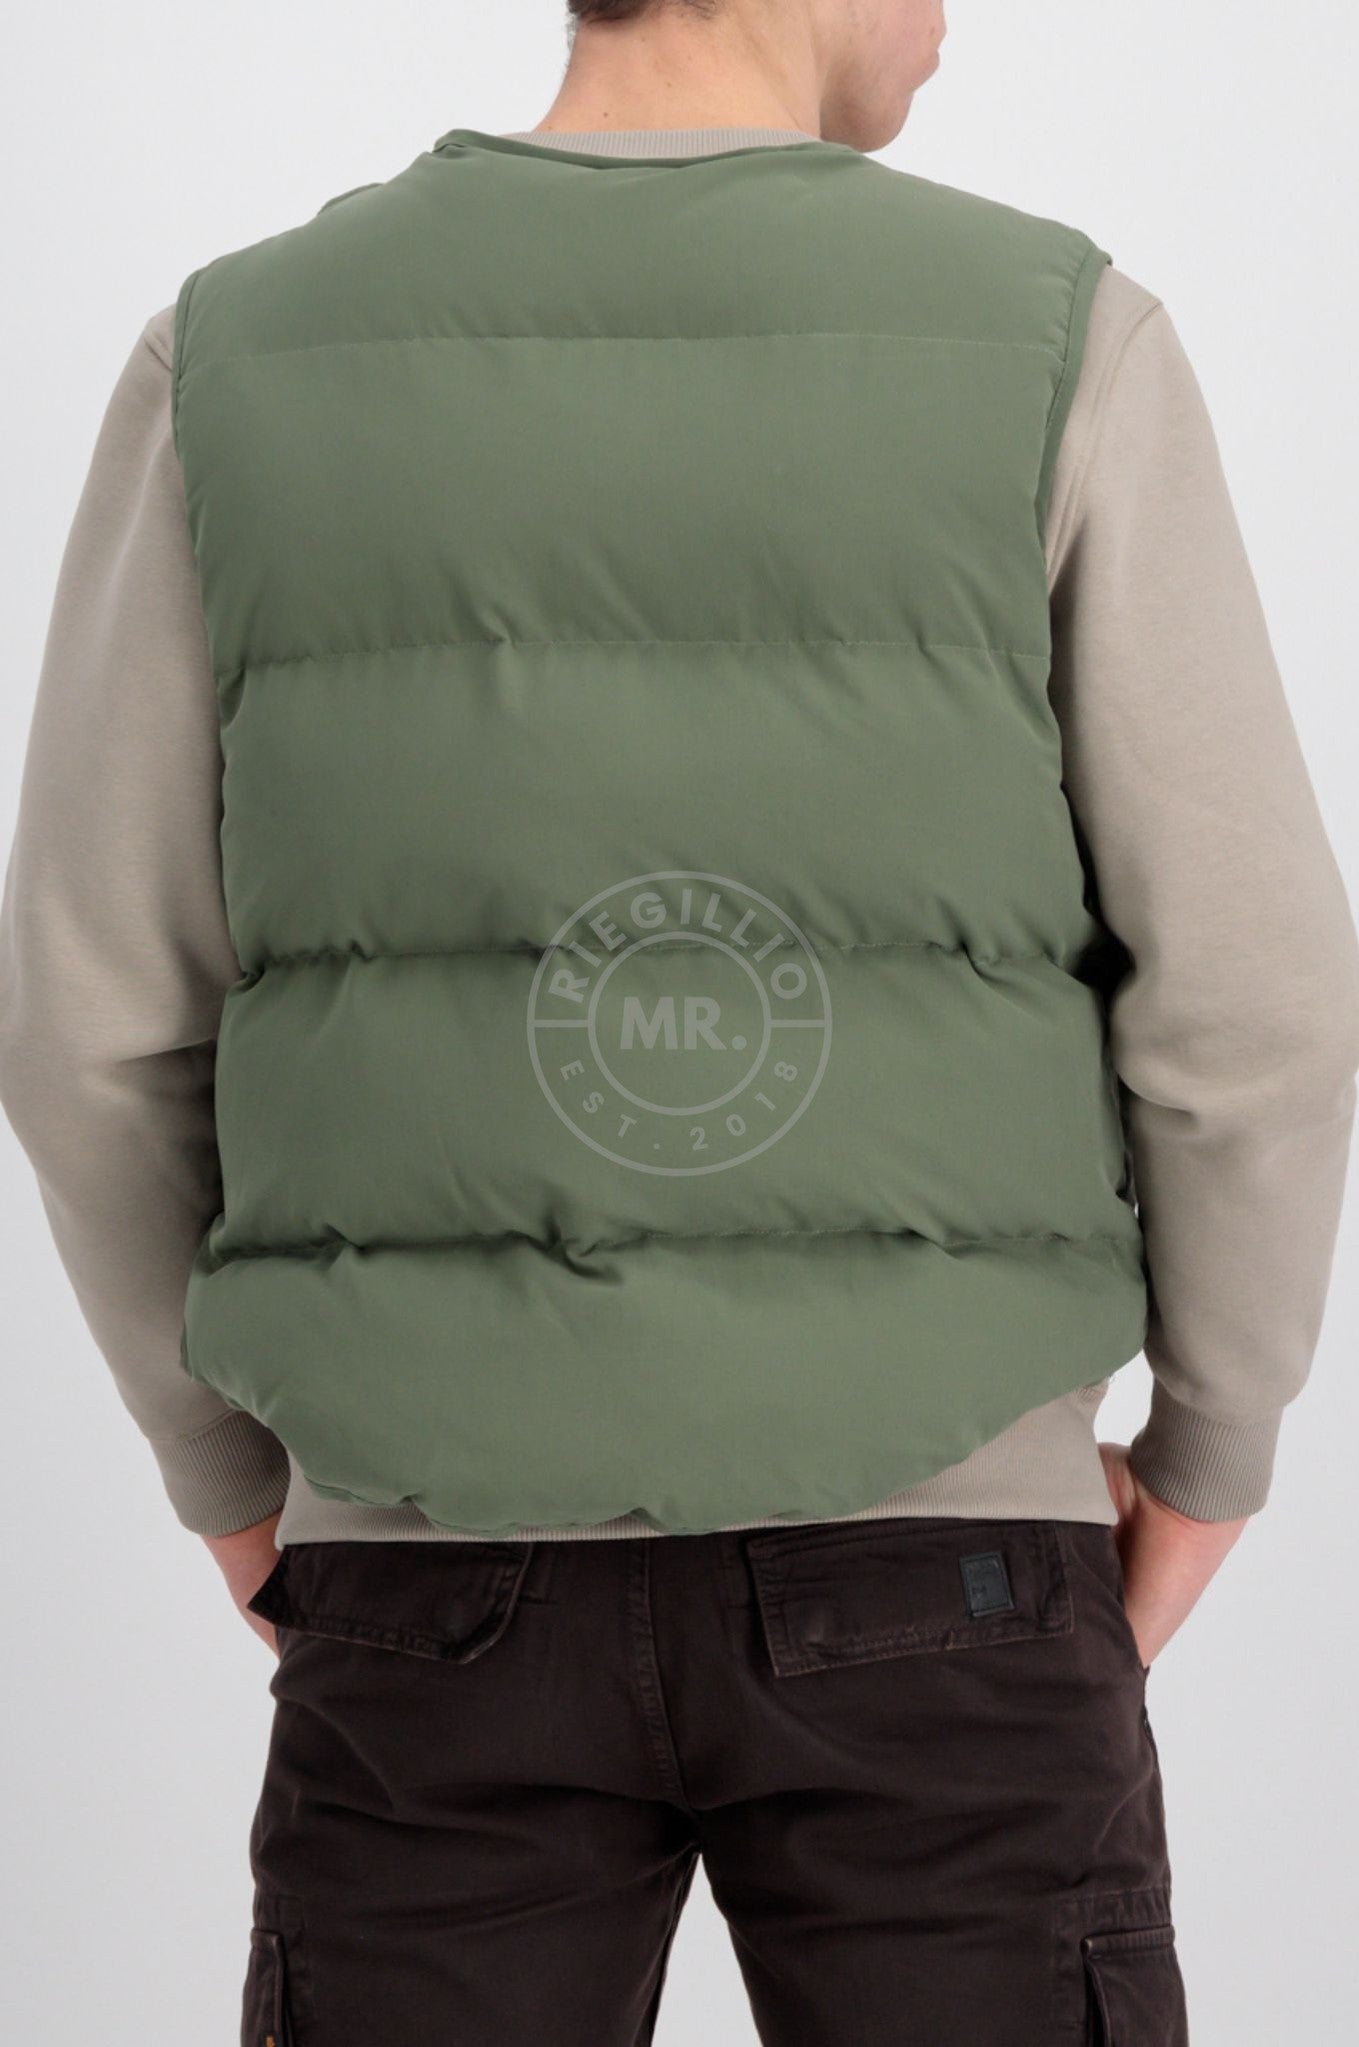 Alpha Industries Protector Puffer Vest - Sage Green at MR. Riegillio | Übergangsjacken